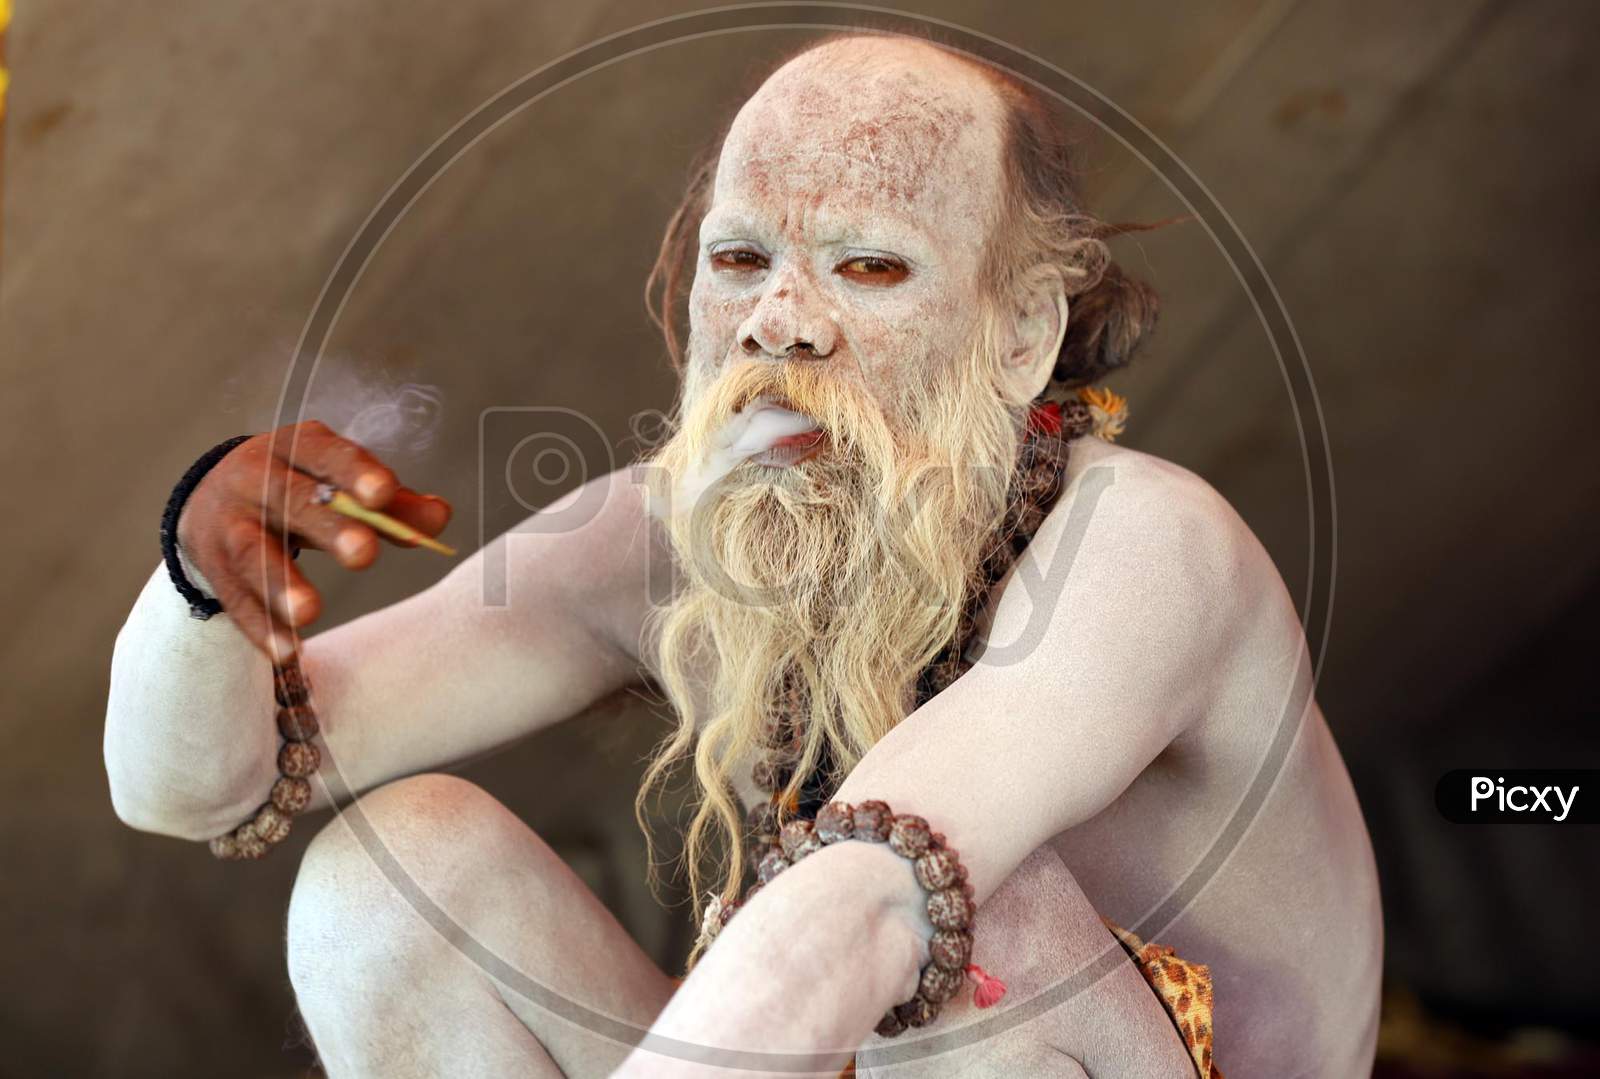 A Naga Sadhu Or Holy Man Apply Ashes On His Body Smoking Bidi On A Cold And Fogy Weather At An Akhada Camp At Kumbh Mela In Prayagraj, January 8, 2019.